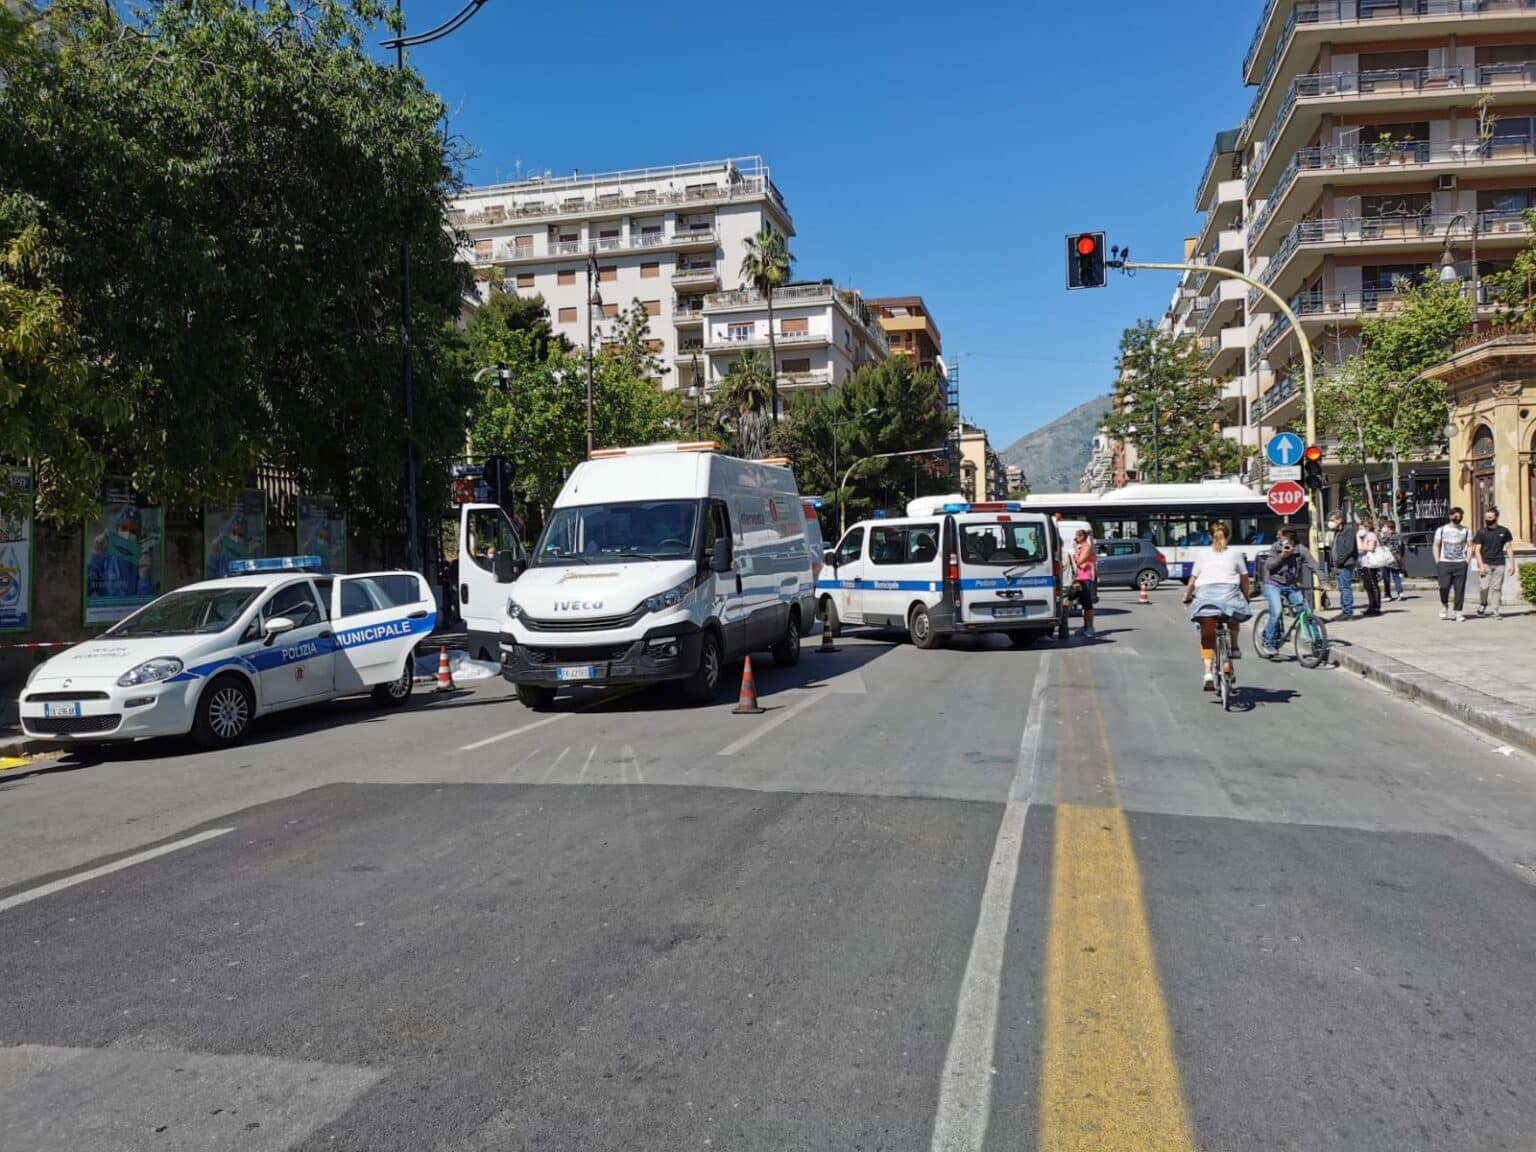 Ancora sangue in Sicilia, investita da un’auto in strada: la vittima è una donna, i DETTAGLI